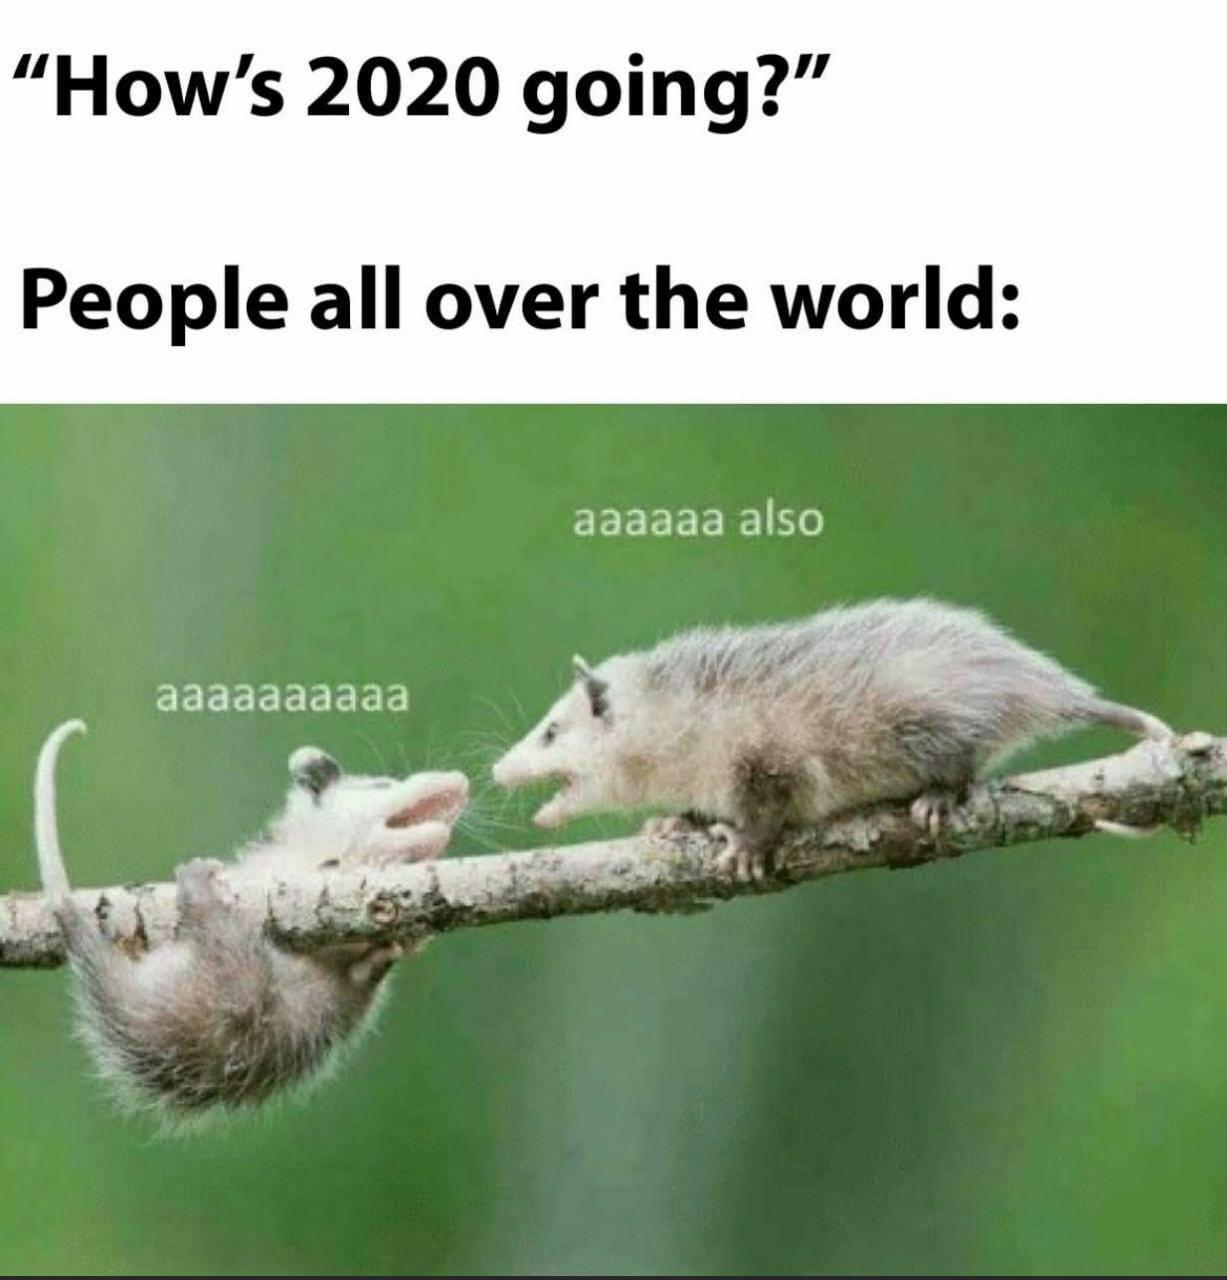 possum meme aaaaaa - How's 2020 going?" People all over the world aaaaaa also